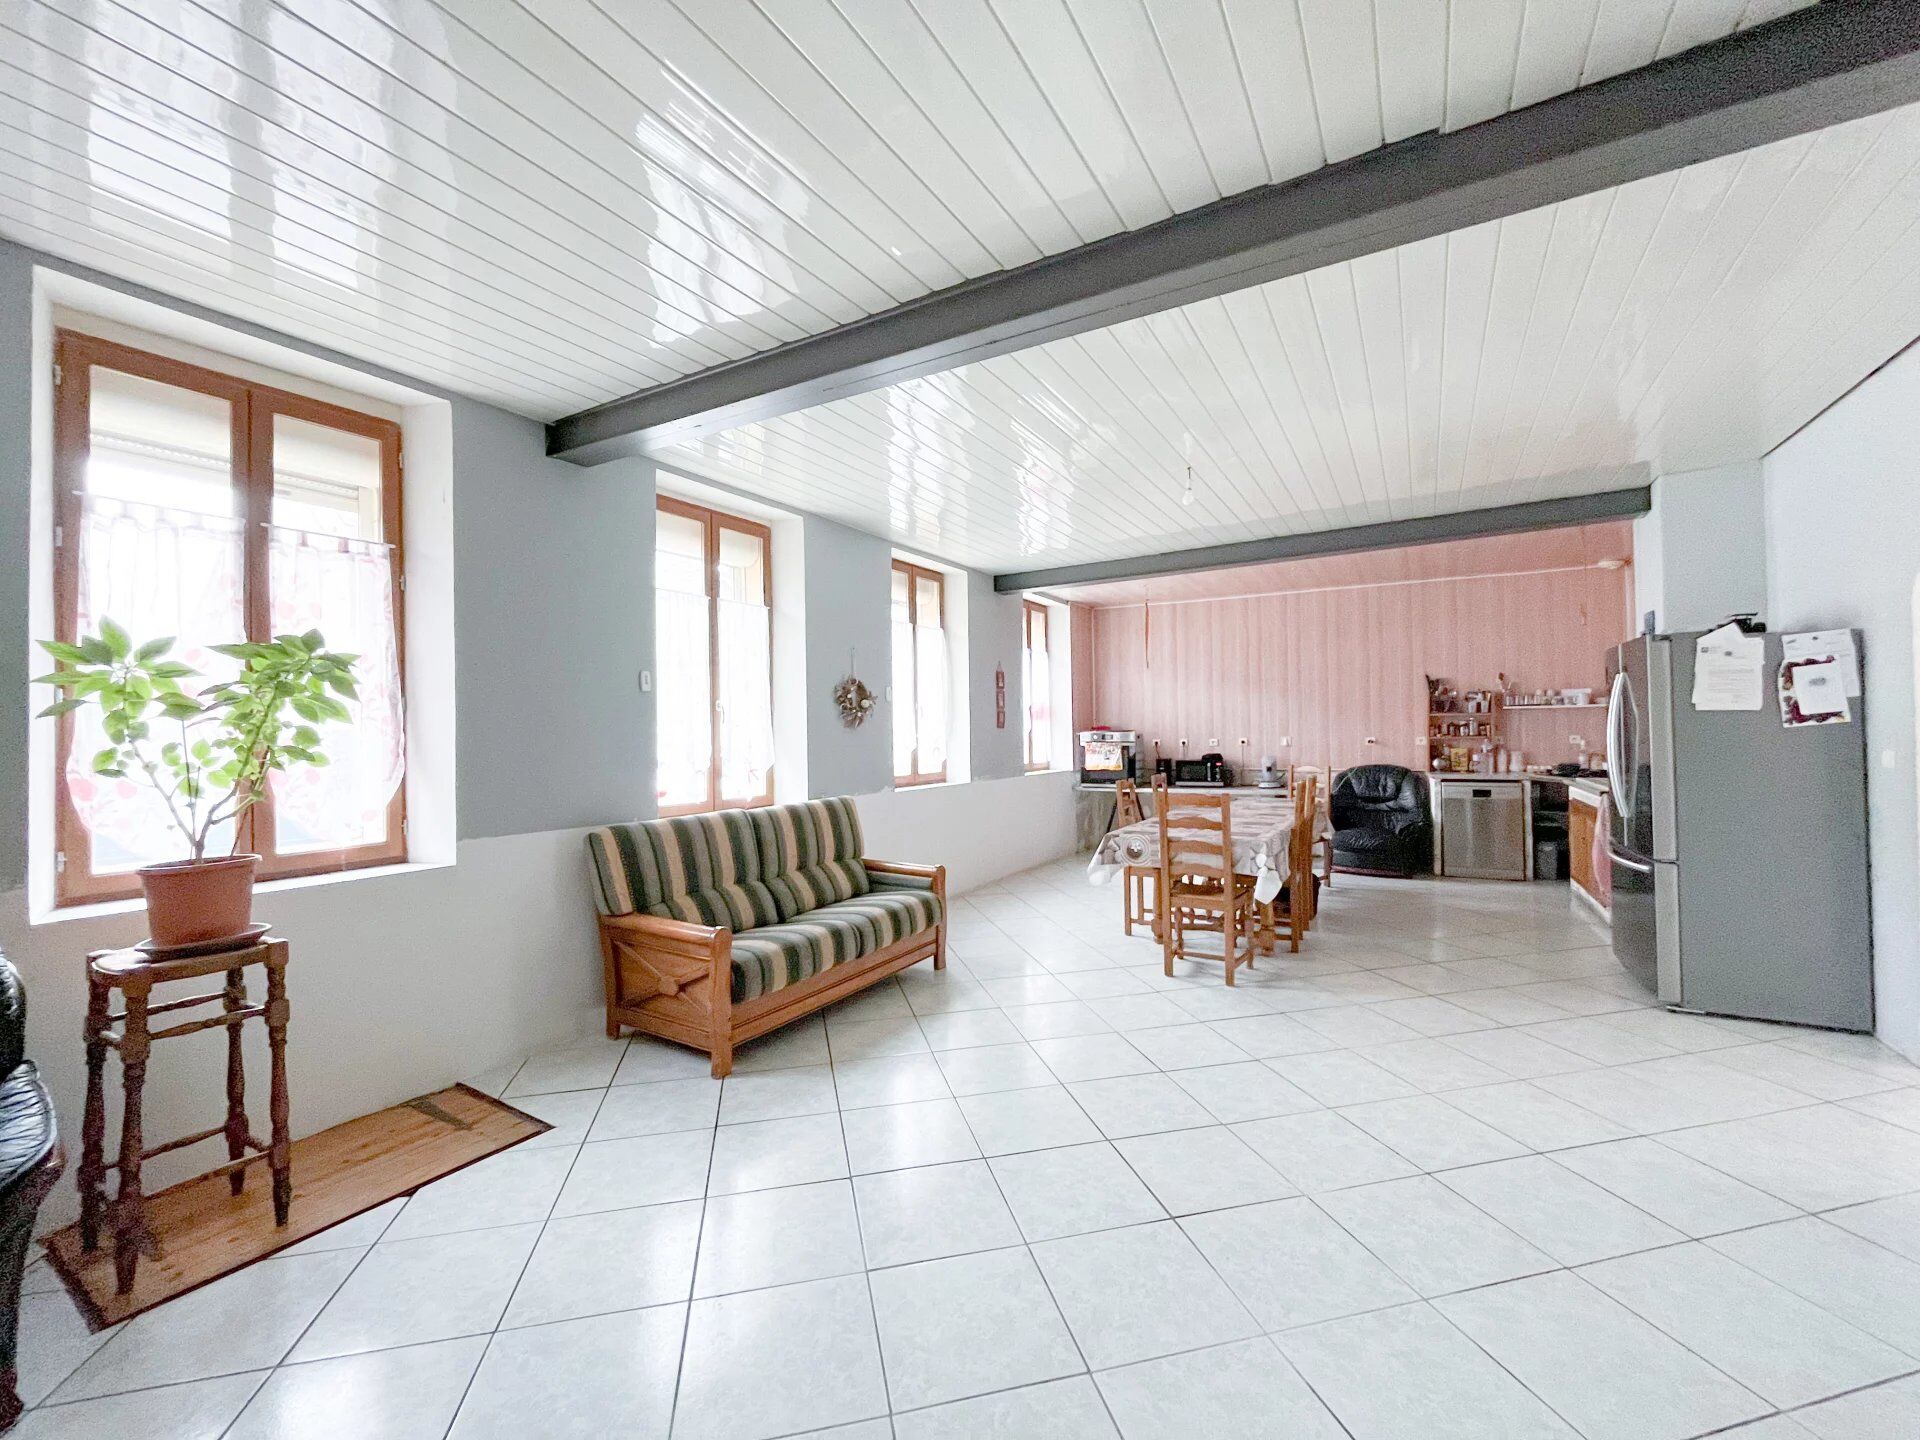 Vente Maison 143 m² à Crécy-sur-Serre 118 000 €